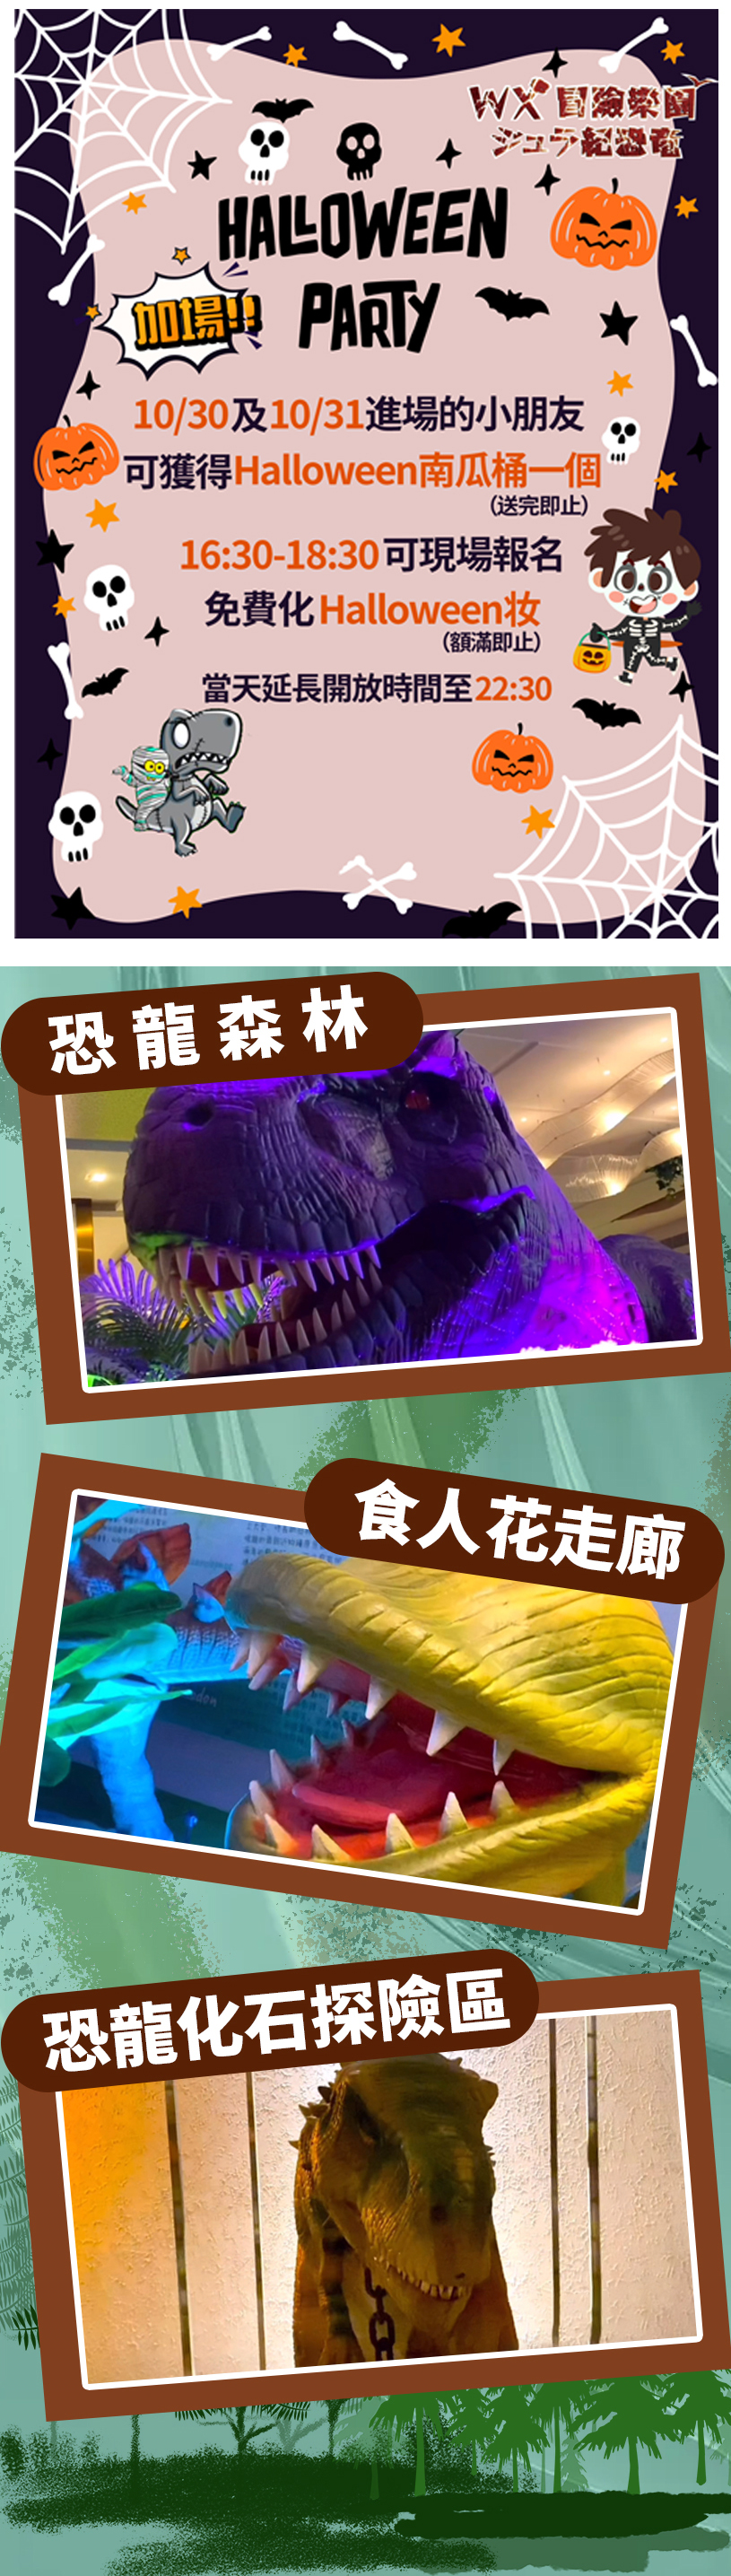 侏罗纪恐龙展详情页-繁体_03.jpg